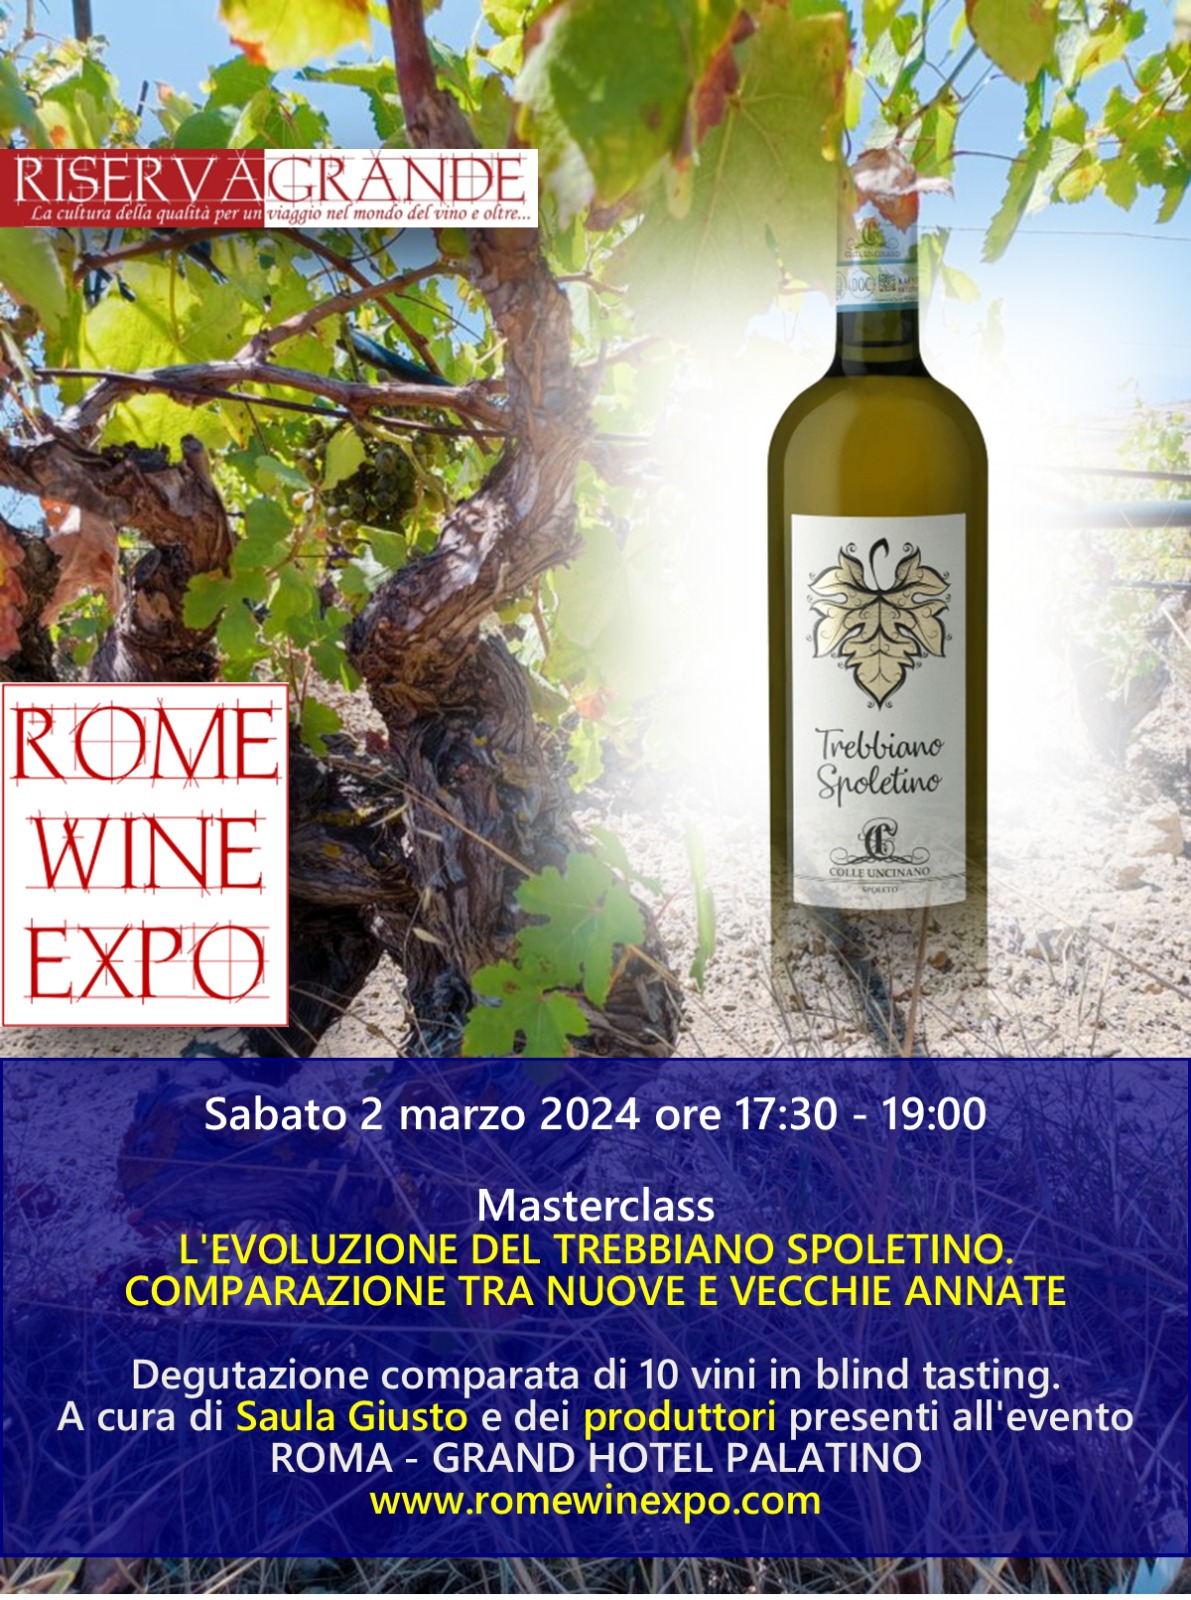 Rome Wine Expo edizione 2024, assaggi, calici ed emozioni, locandina evento